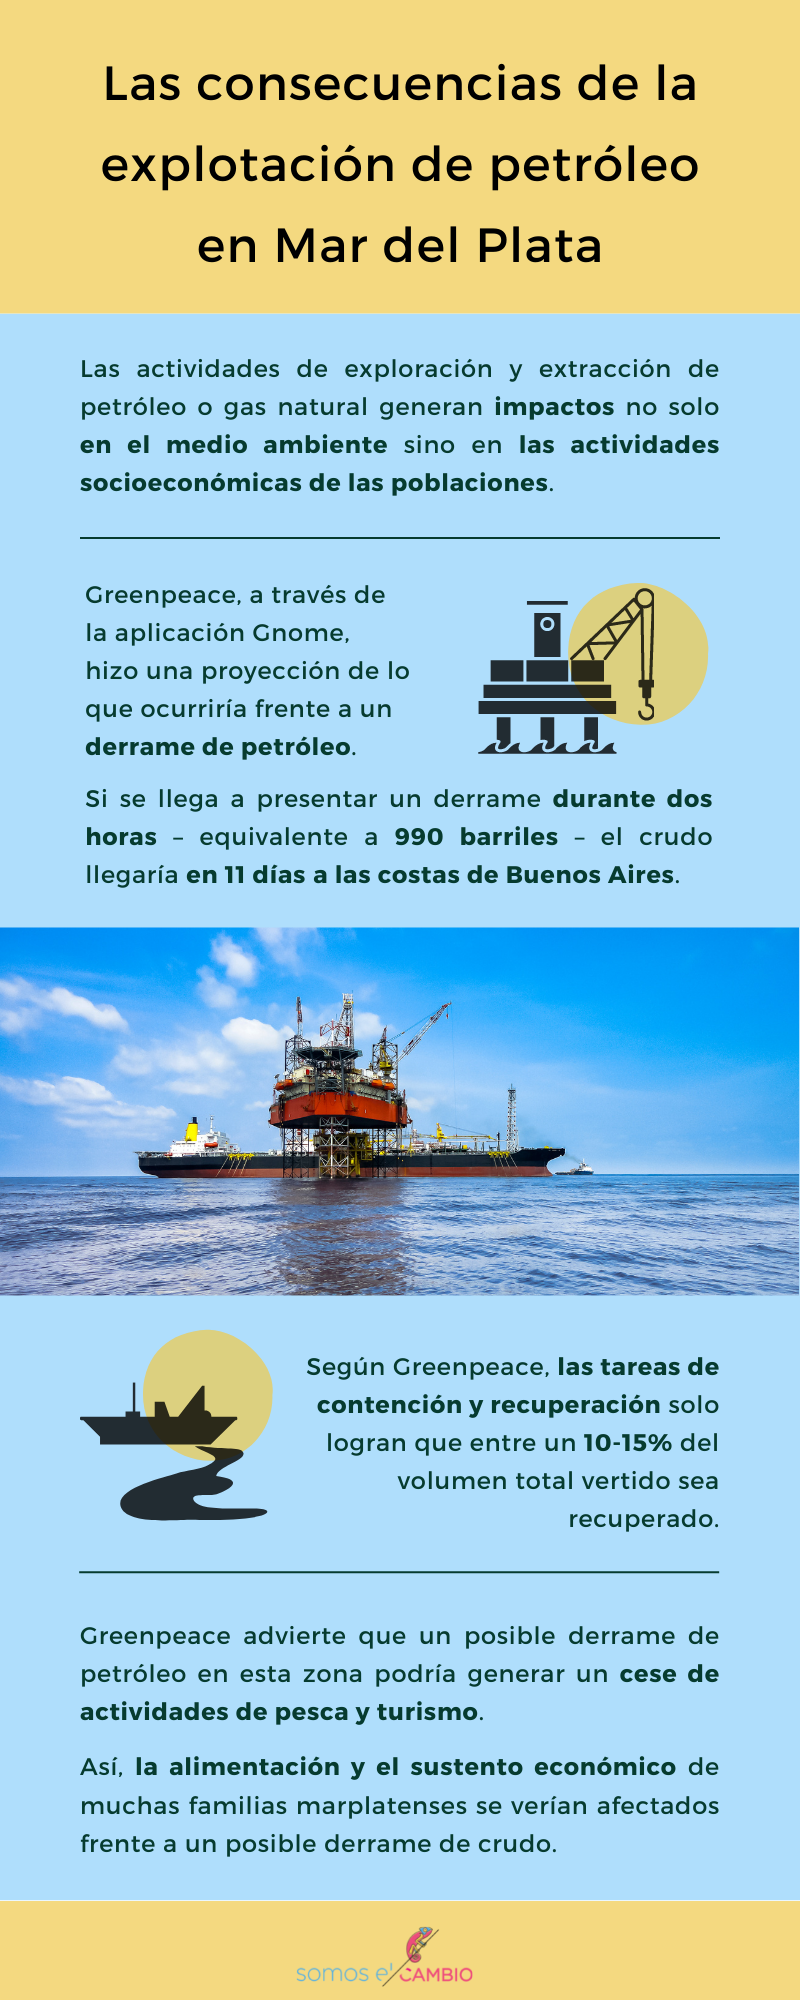 Las consecuencias de la explotación de petróleo en Mar del Plata